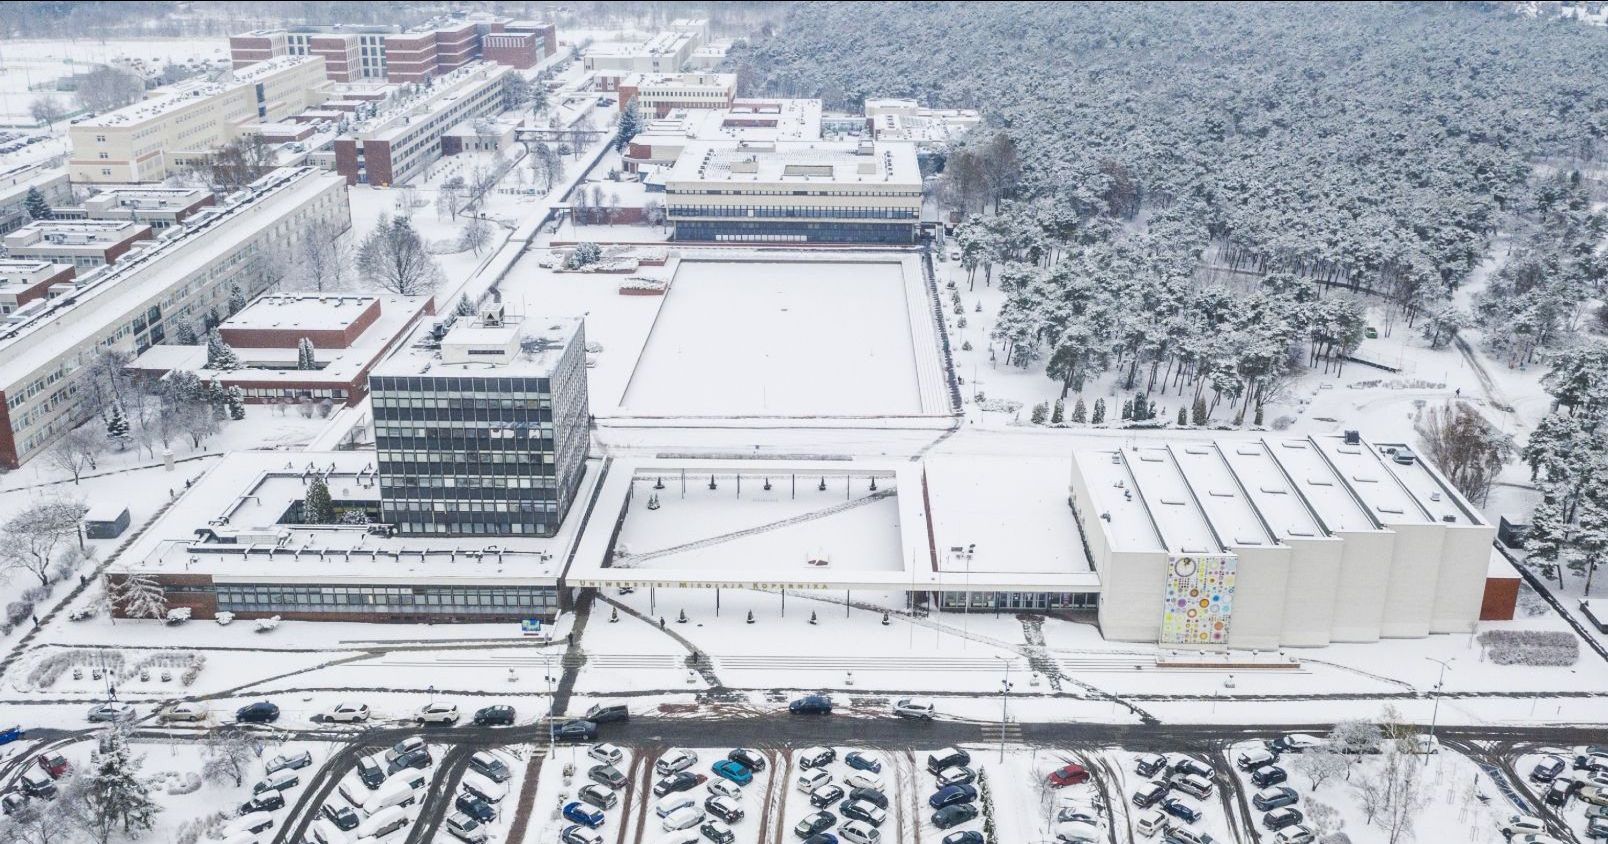  Miasteczko akademickie UMK pokryte śniegiem, zdjęcie wykonane z drona